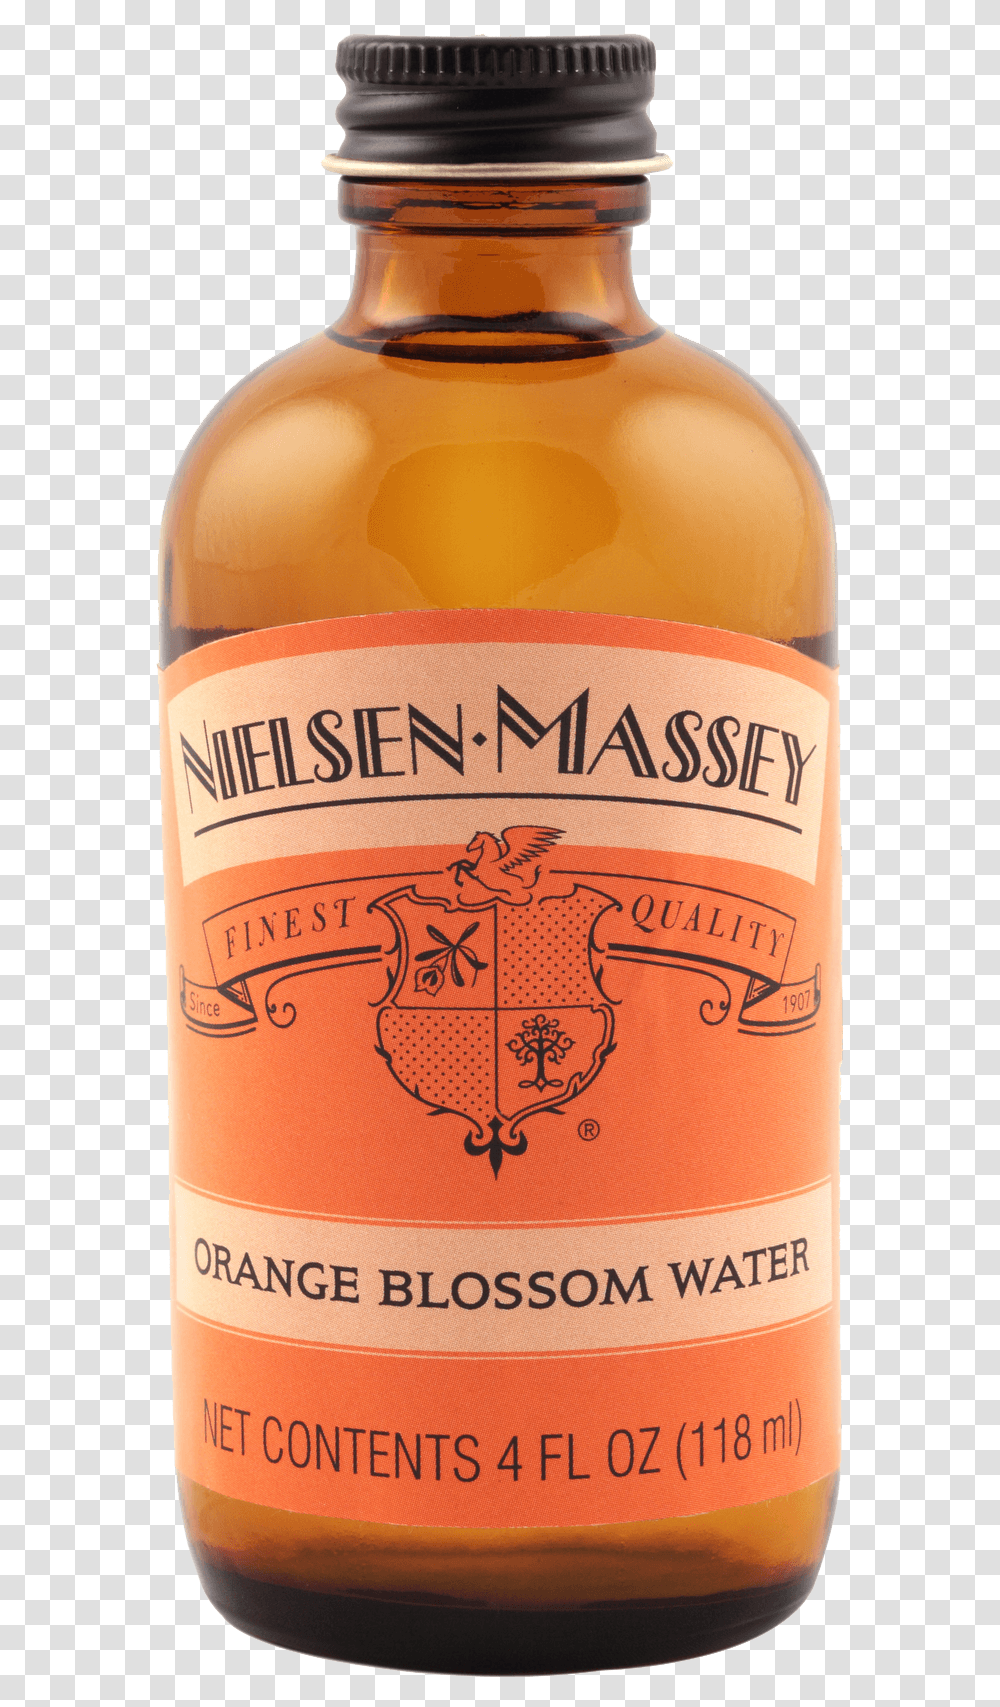 Nielsen Massey Orange Blossom Water, Liquor, Alcohol, Beverage, Drink Transparent Png